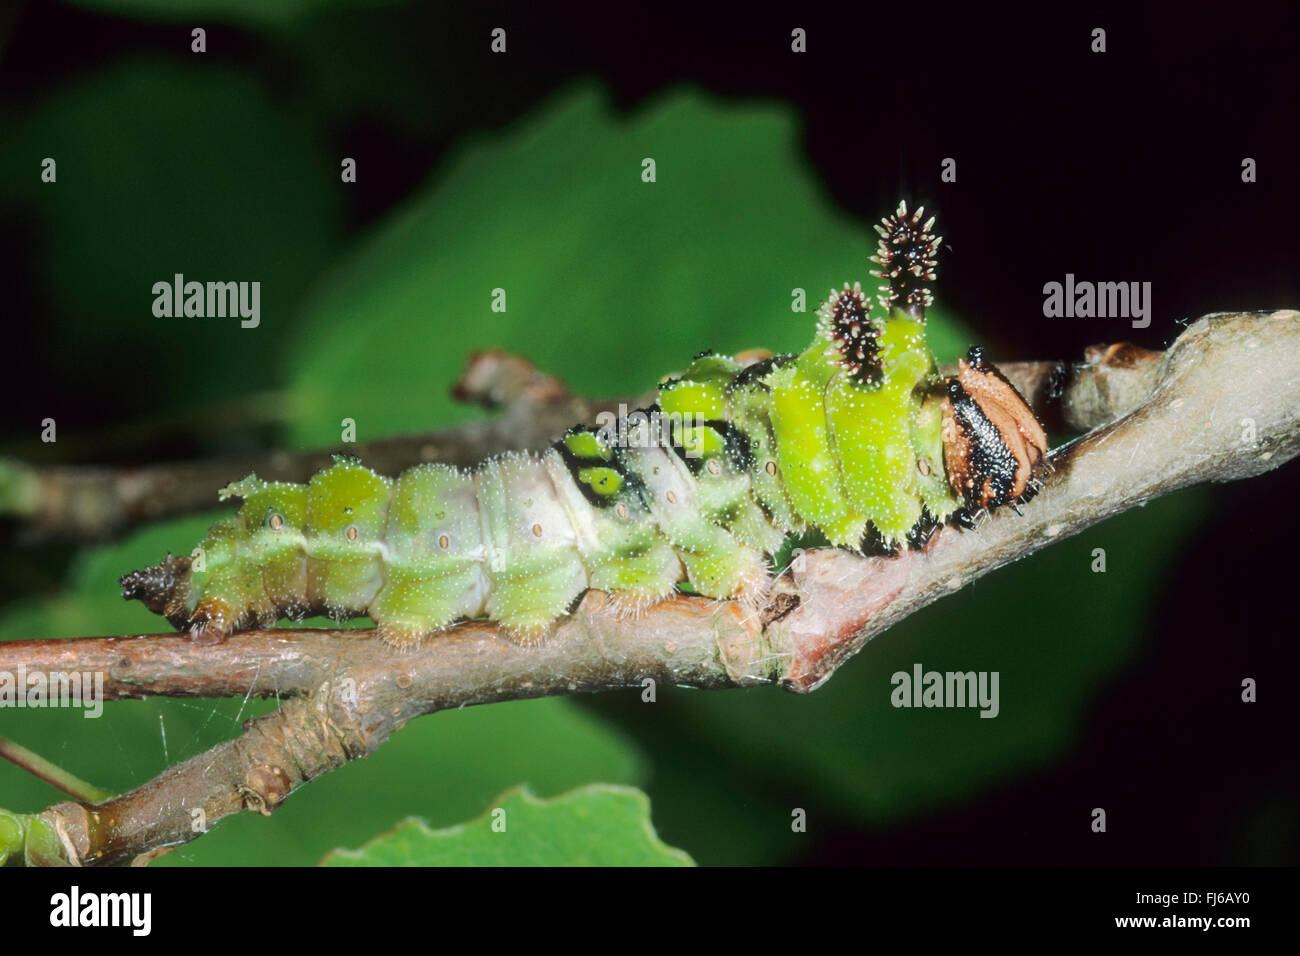 L'amiral (Limenitis populi peuplier), Caterpillar sur une brindille, Allemagne Banque D'Images